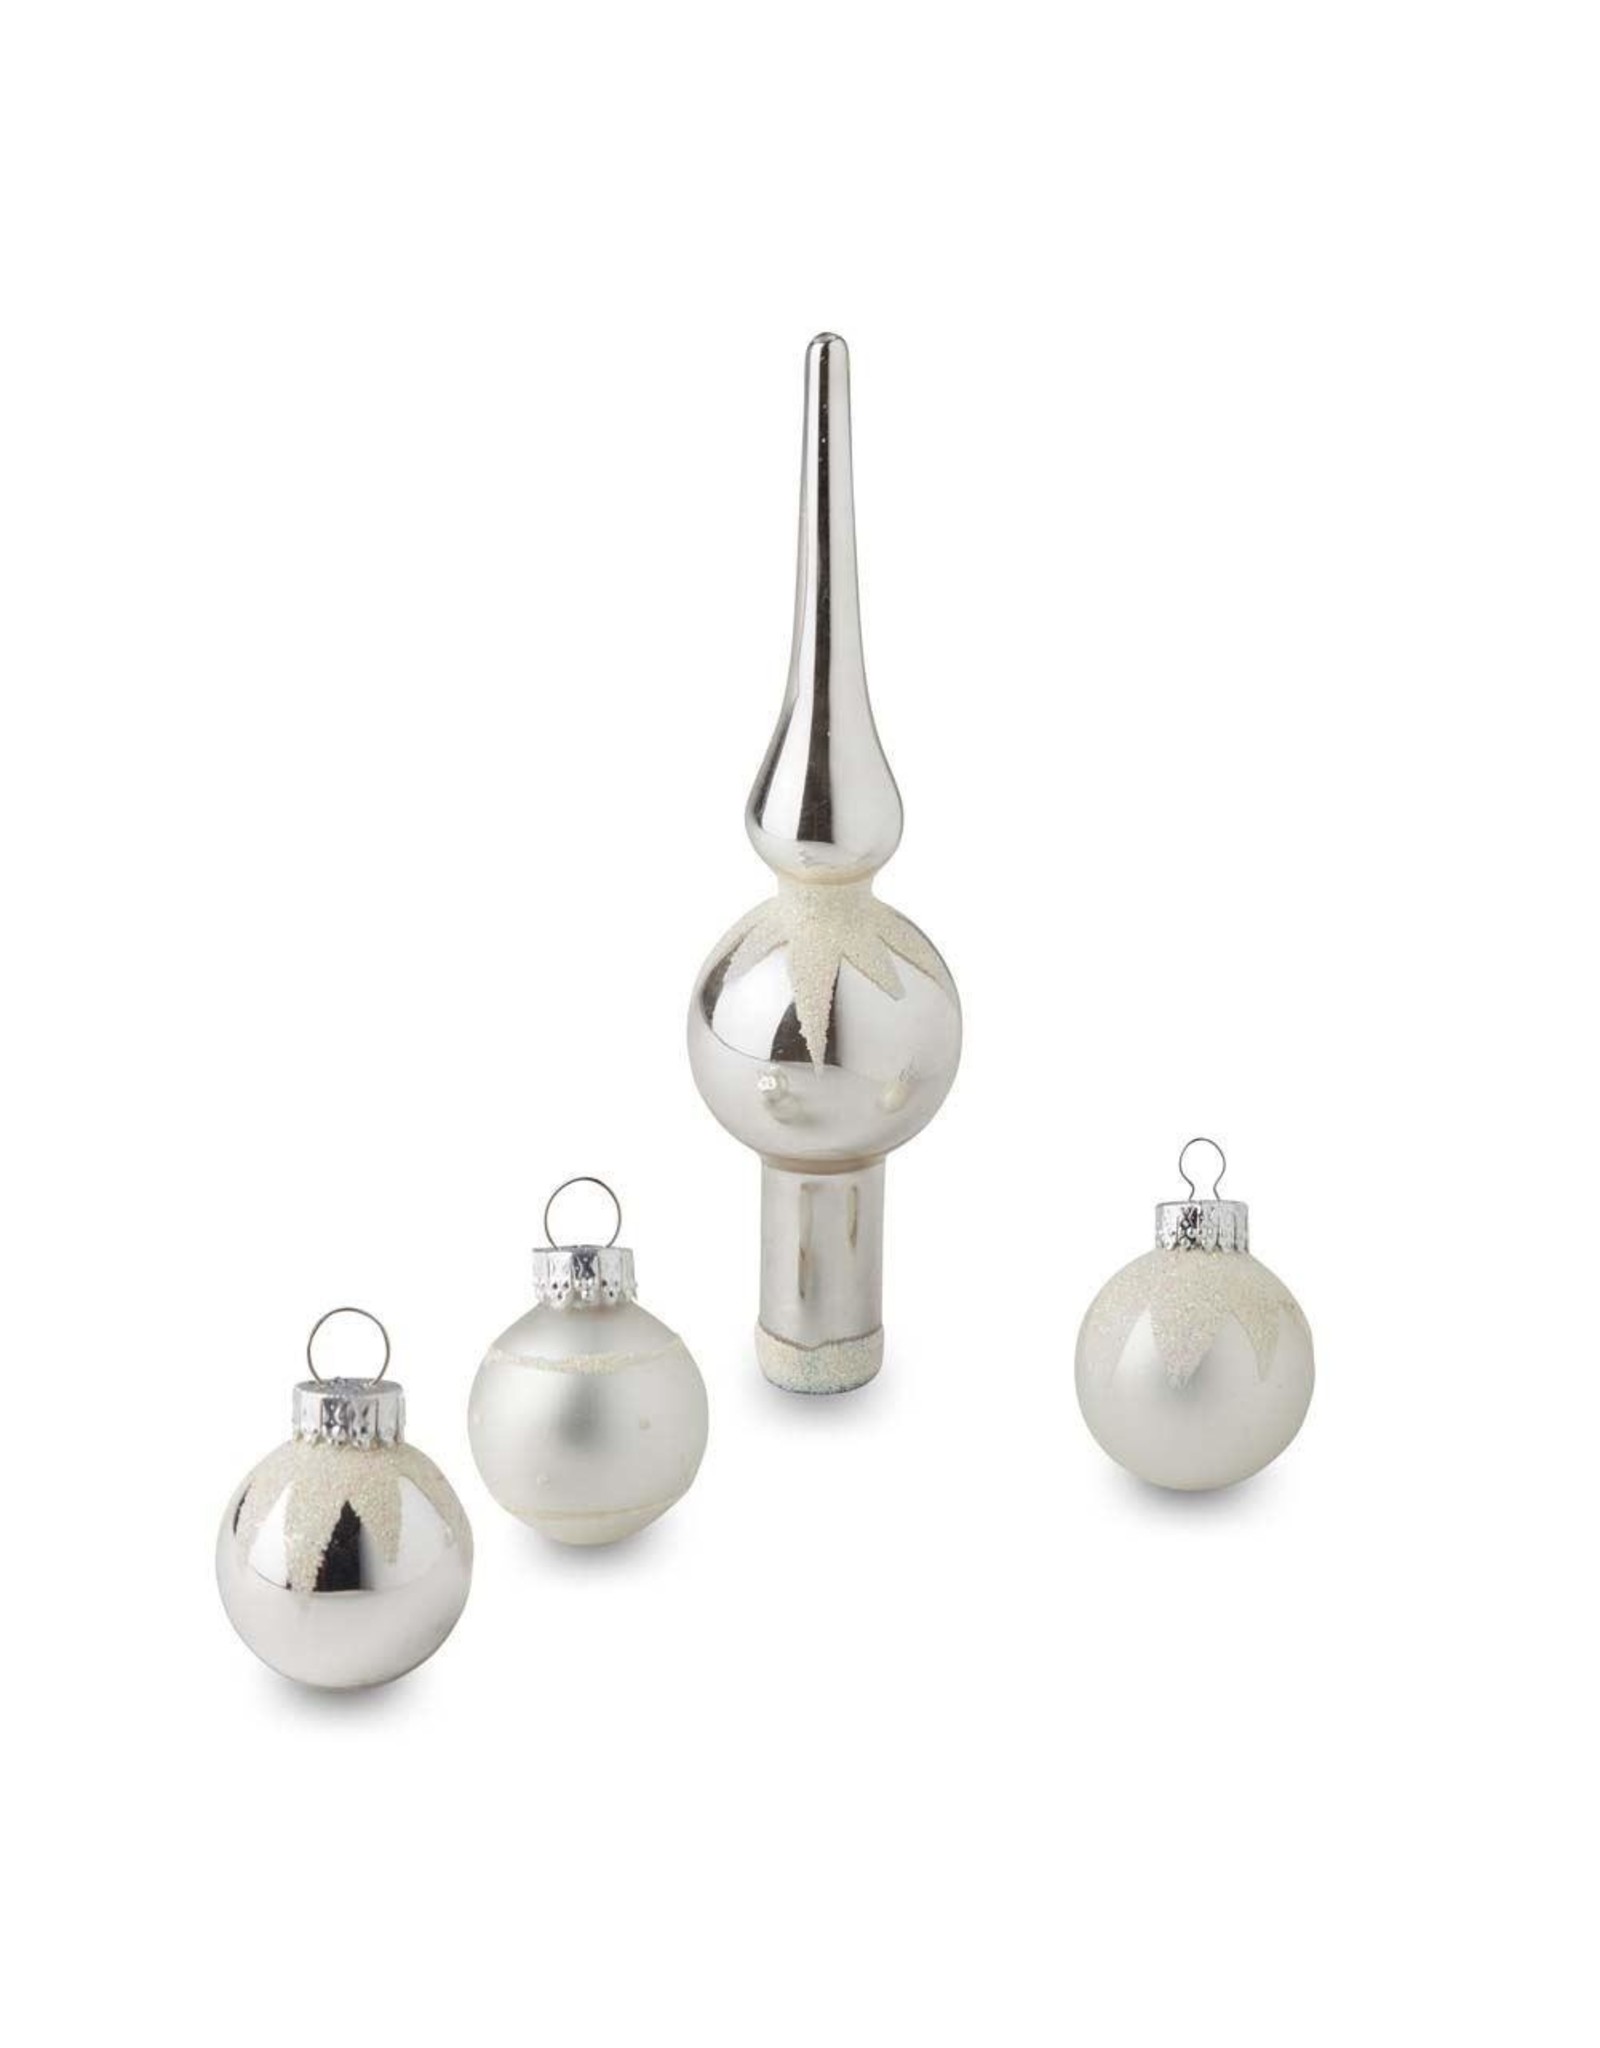 Kurt Adler Silver Miniature Glass Ball Ornaments W Tree Topper 15pc Set 35MM